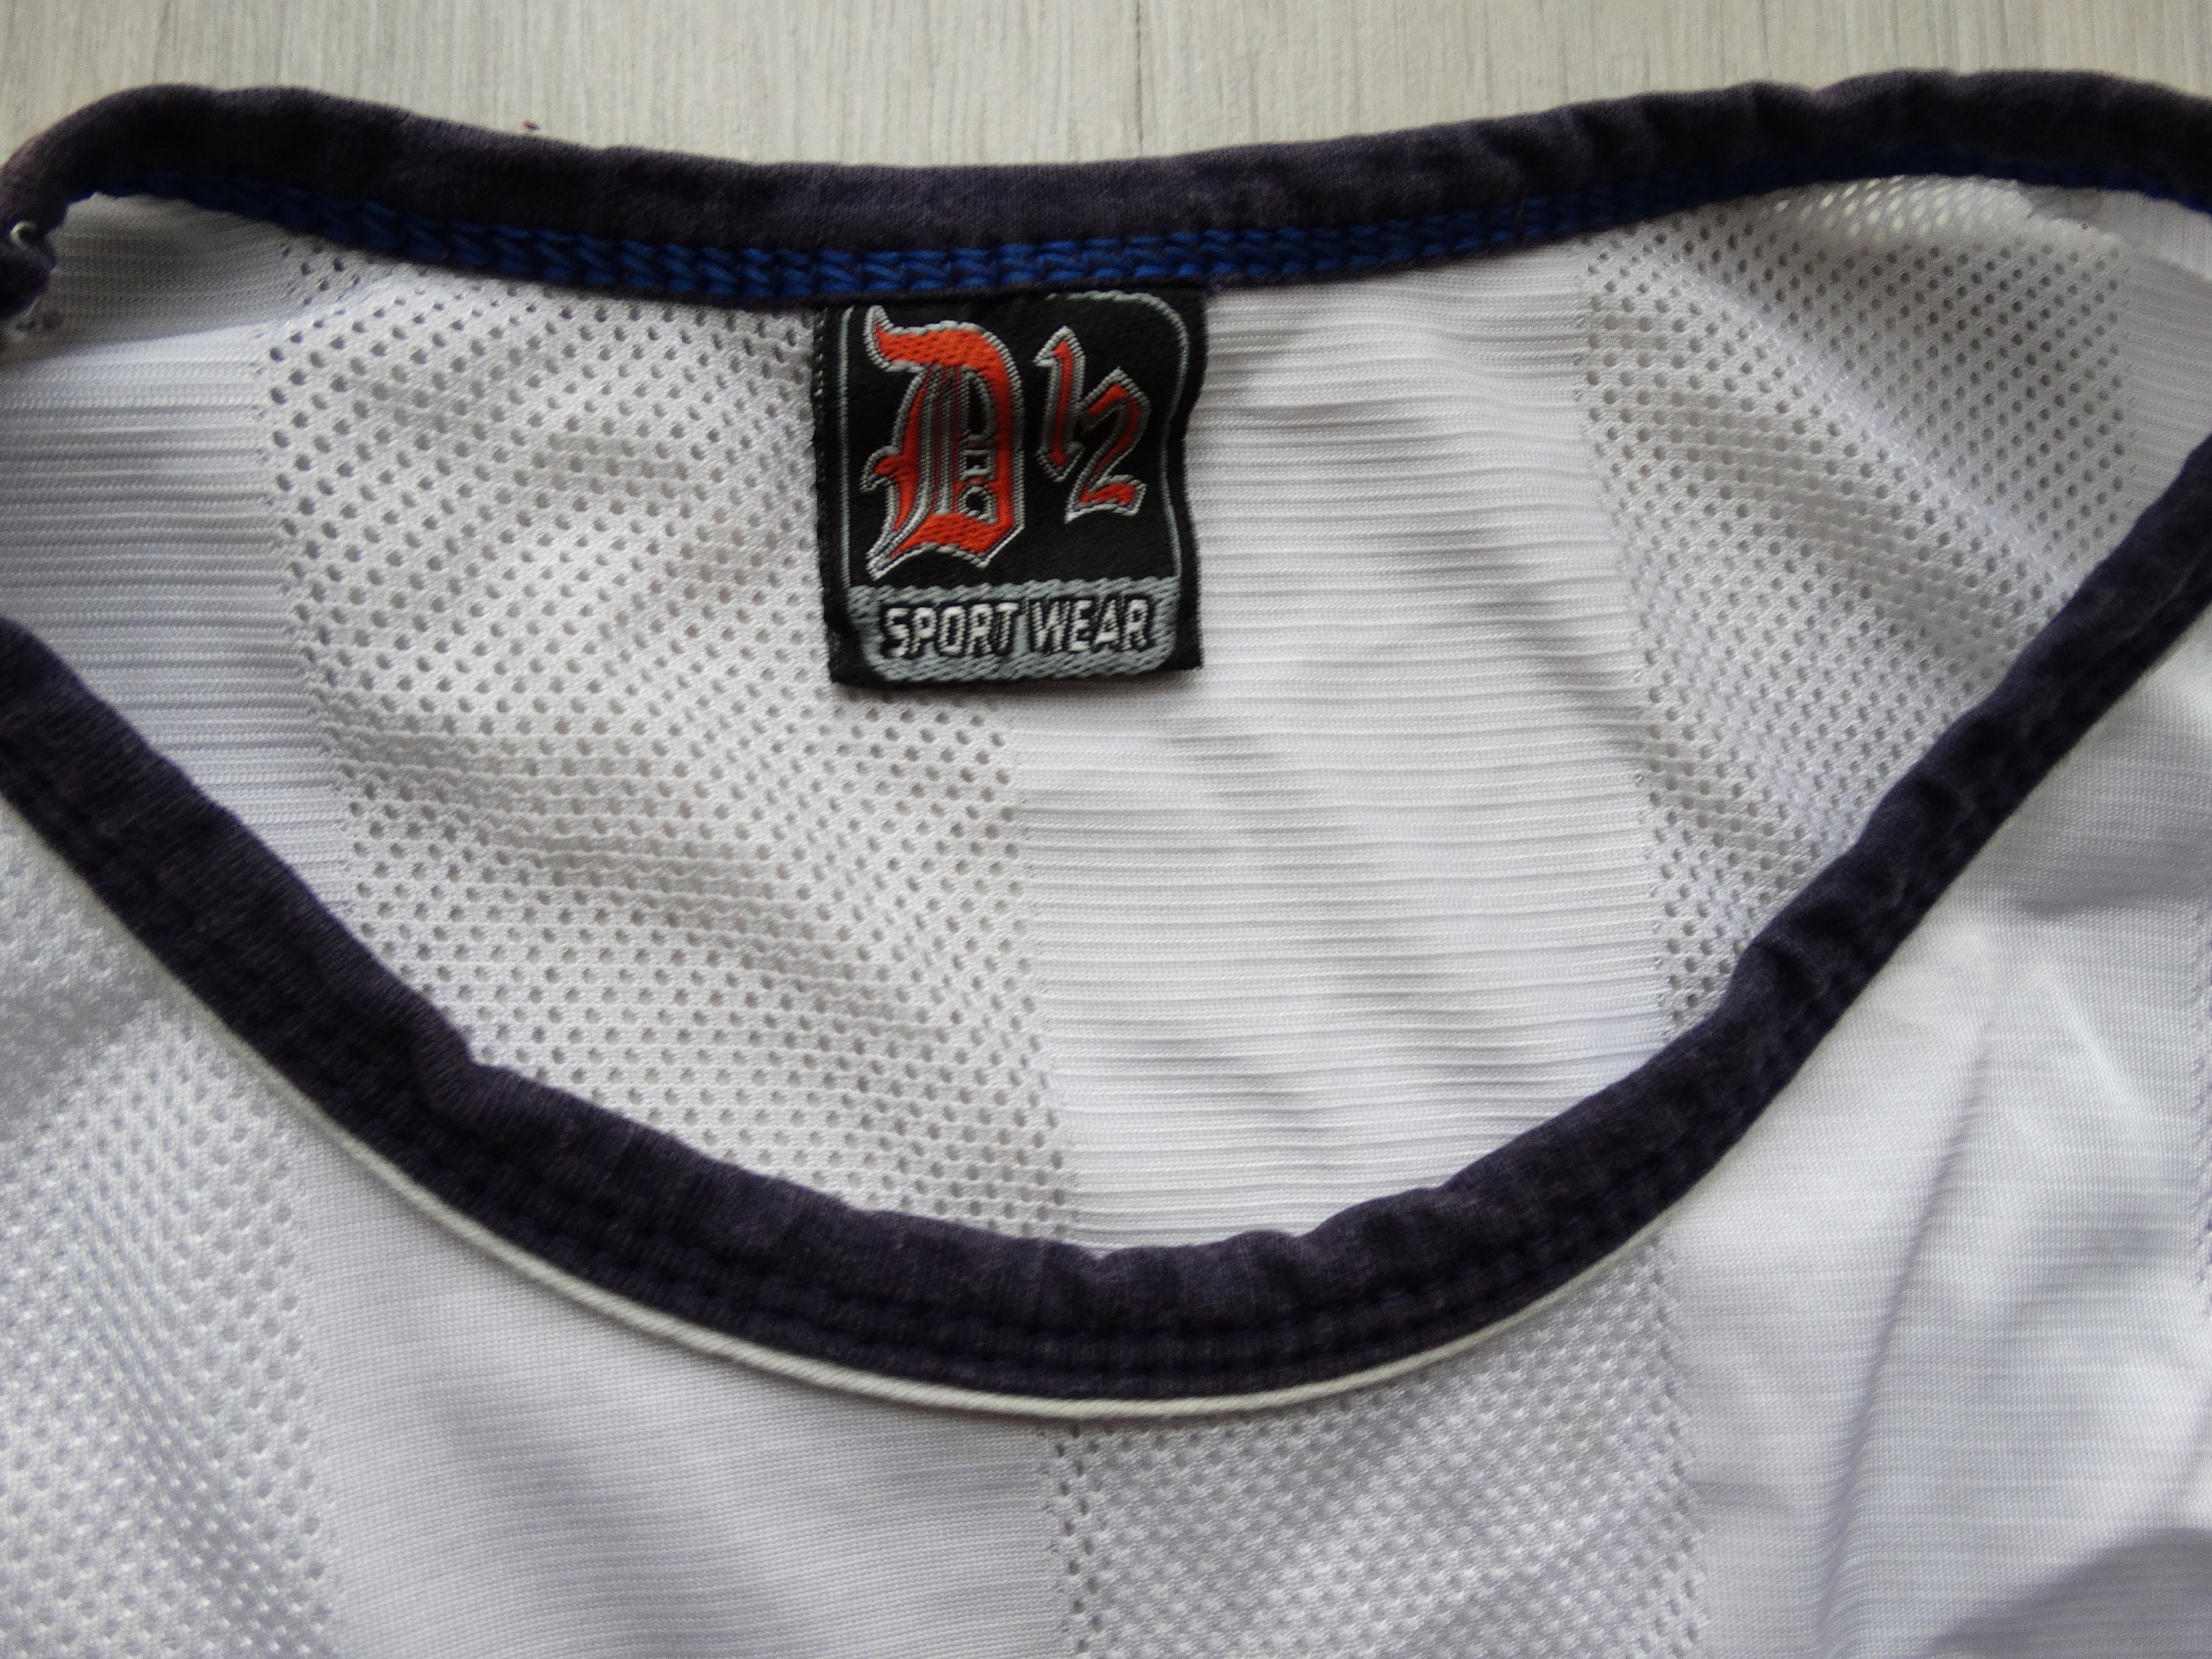 D12 Sportswear embroidered Jersey shirt D12 shirt | Etsy